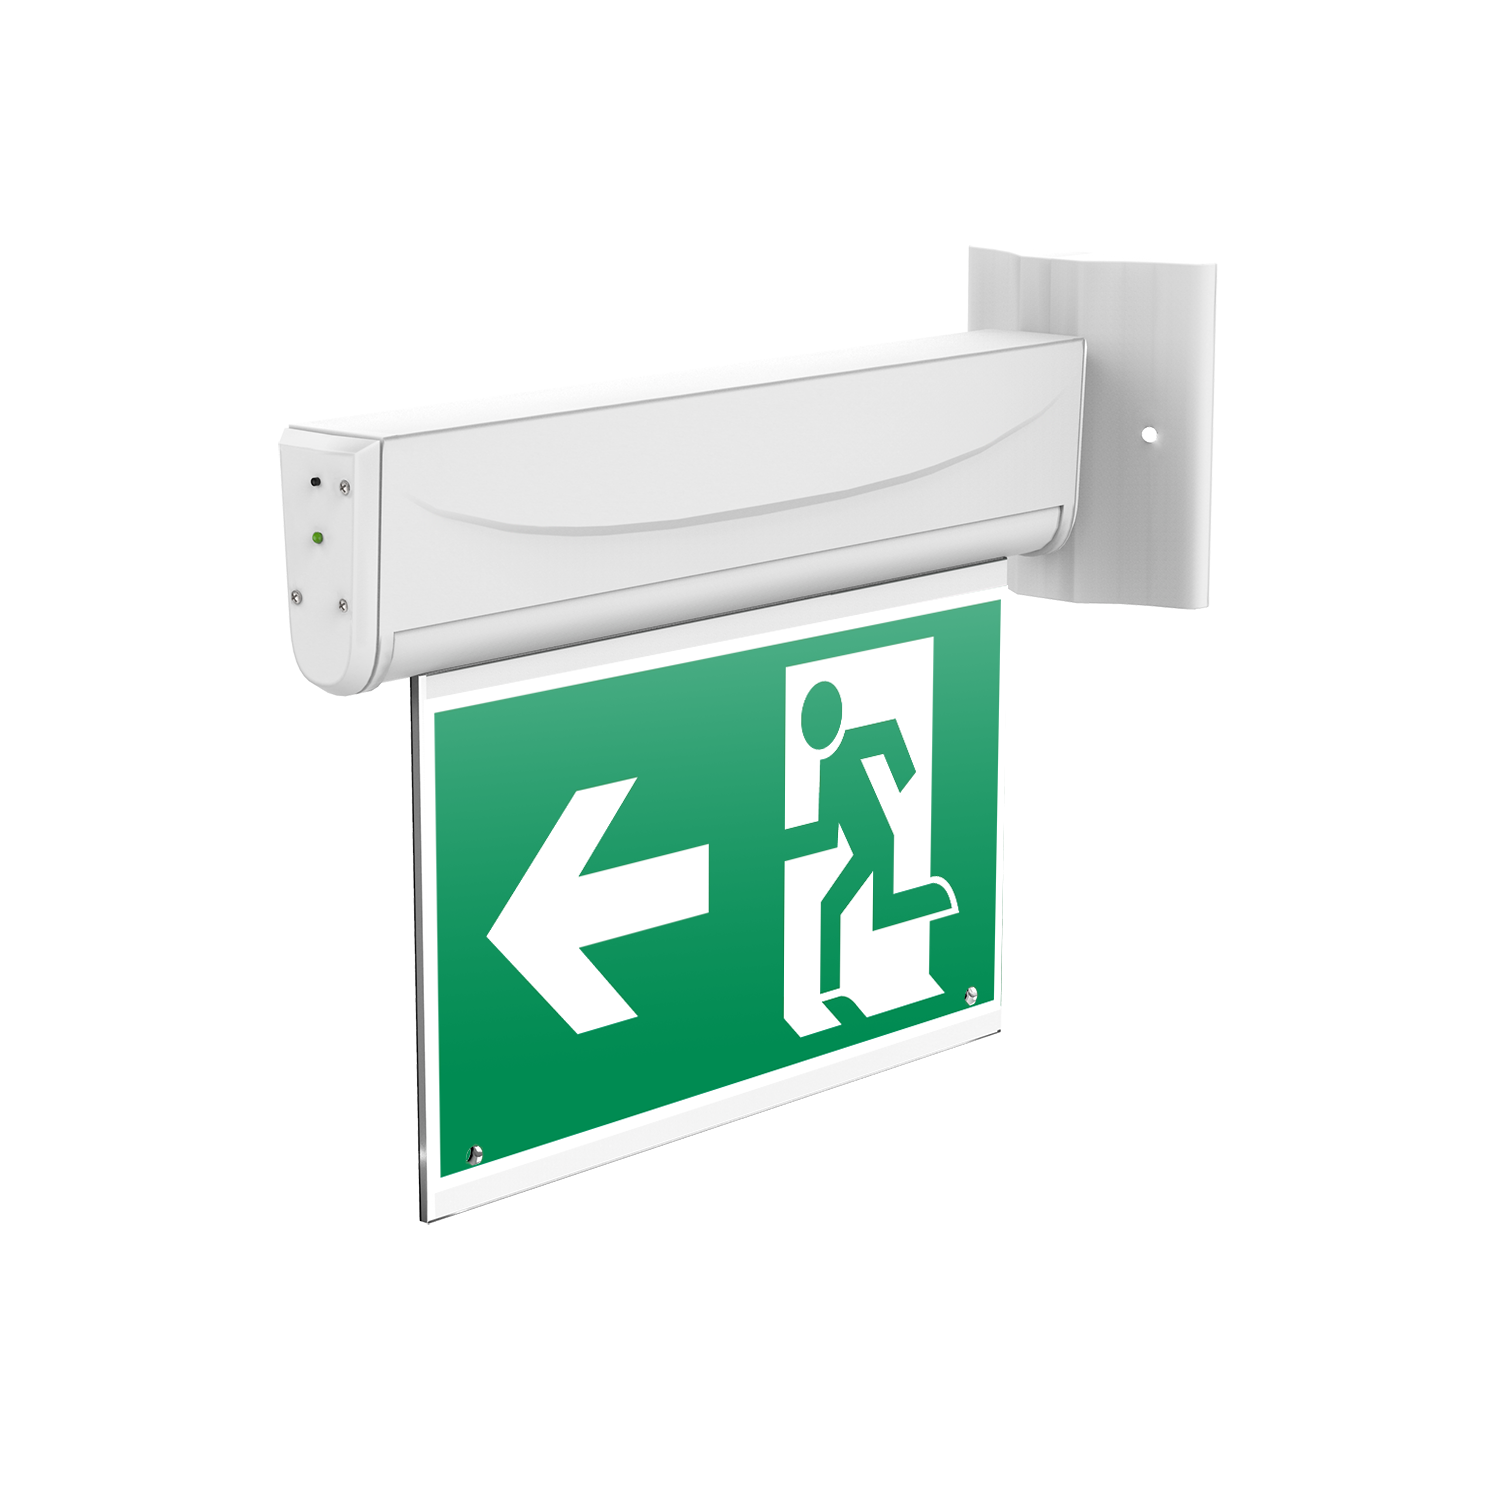 Аварийно-эвакуационные светильники (указатели) BASIC